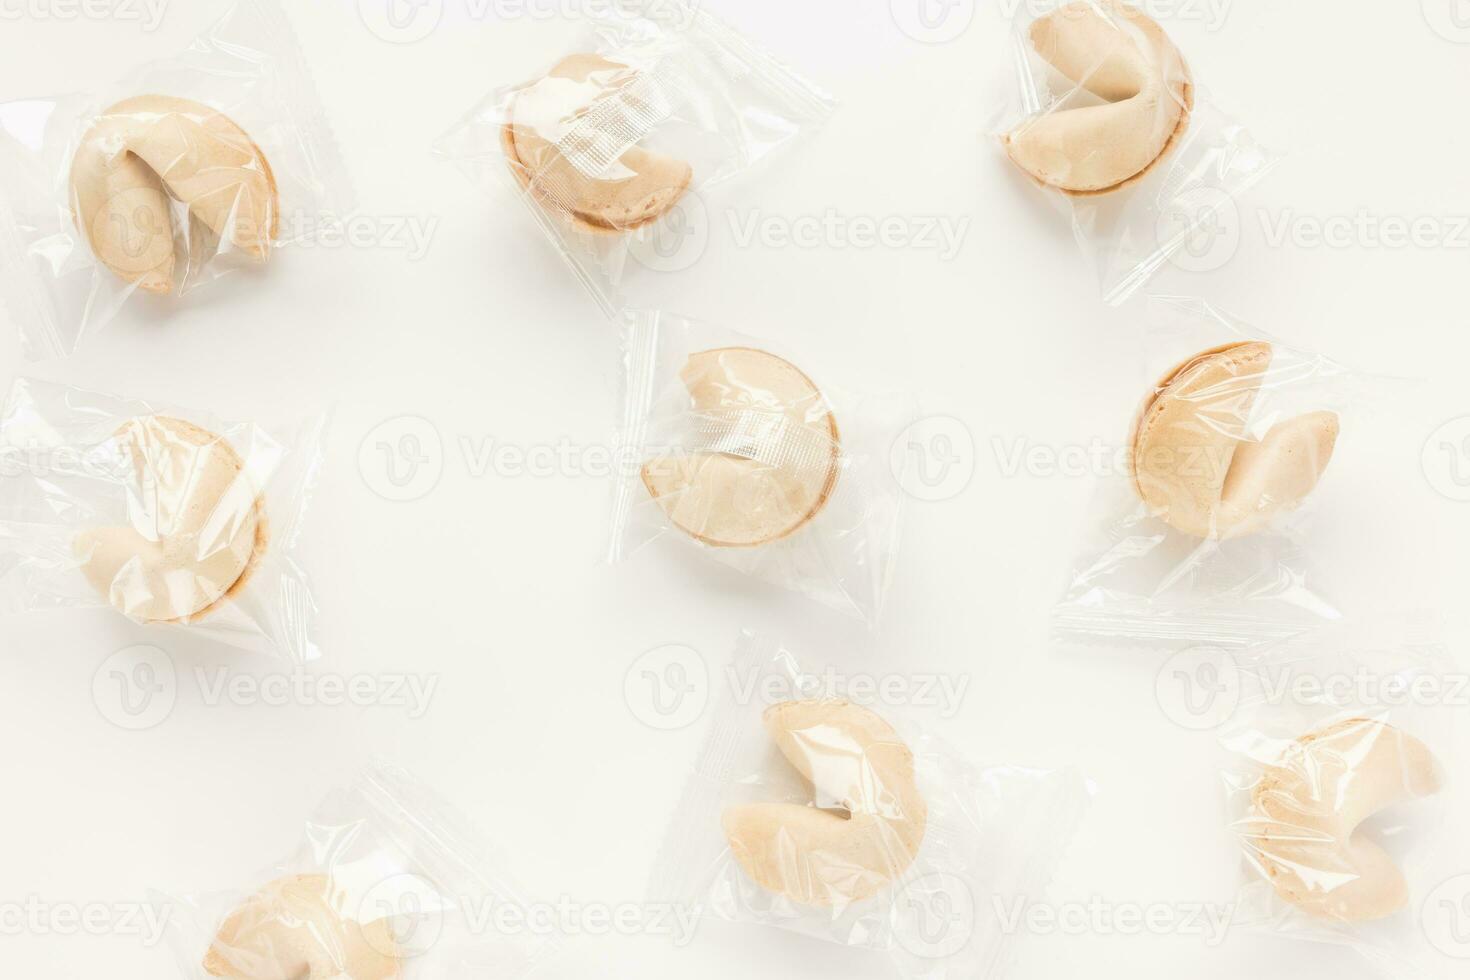 Frais et savoureux chinois fortune biscuits, individuellement enveloppé dans déjouer sur blanc Contexte photo